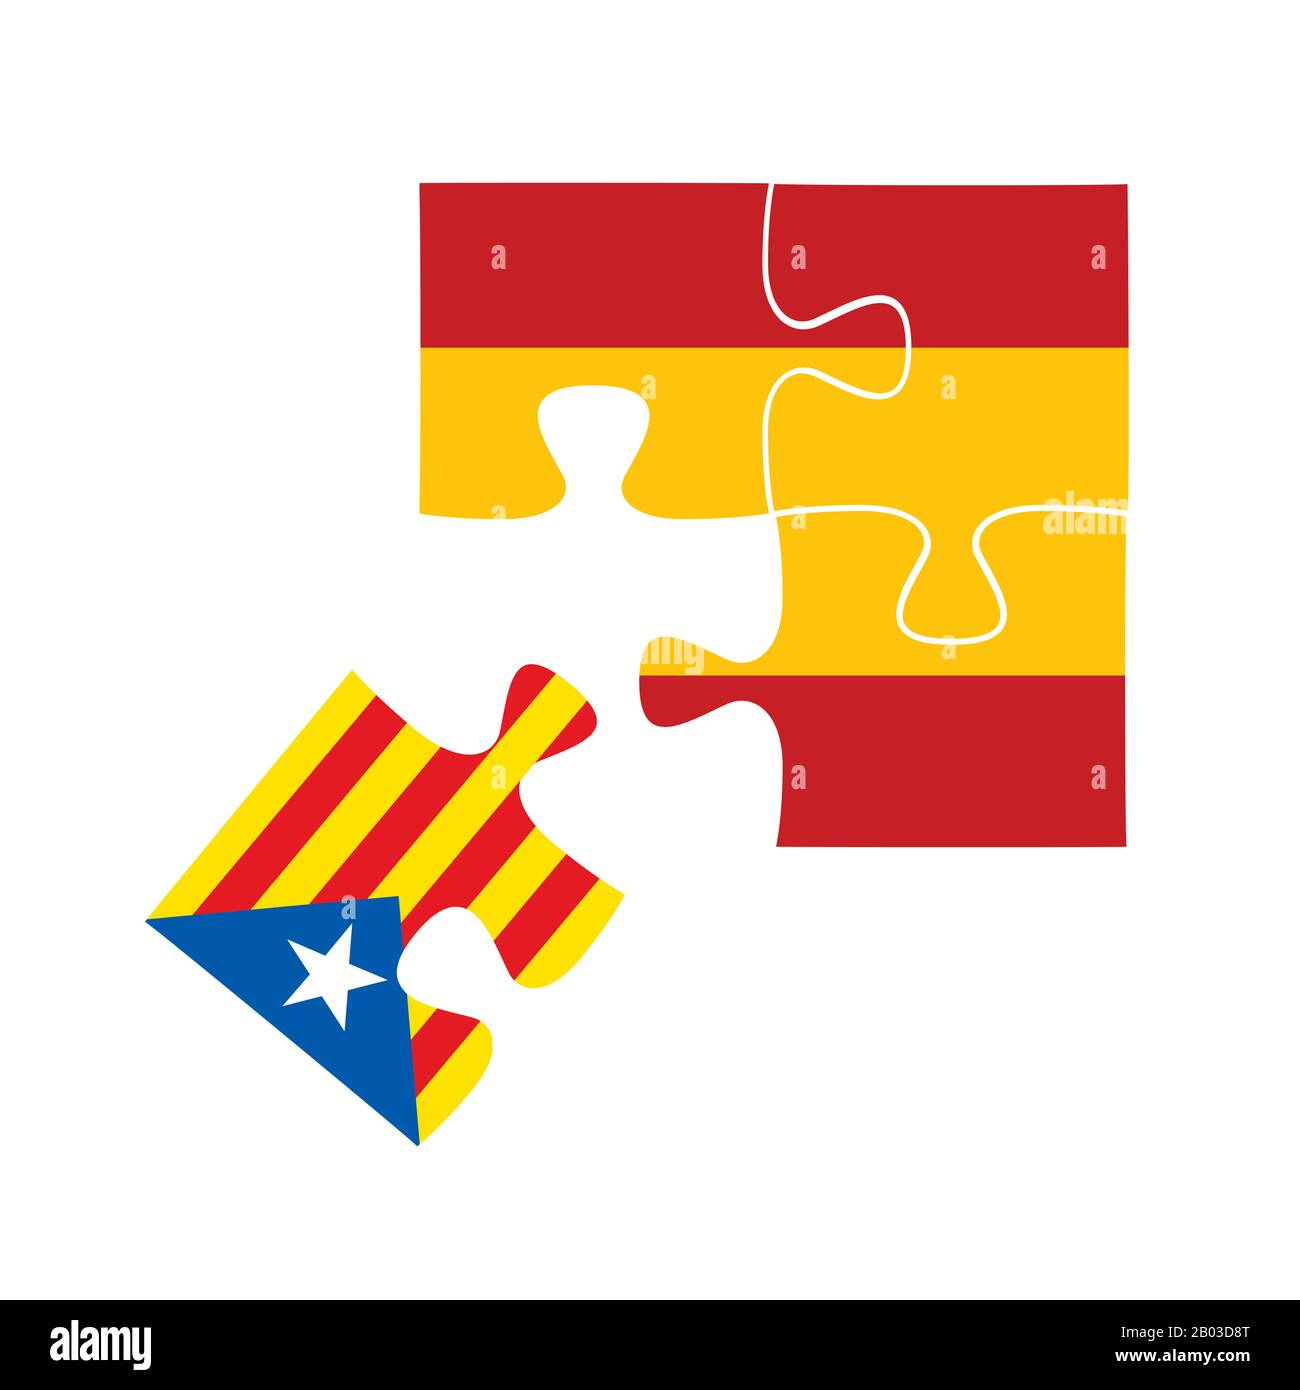 Une tranche du puzzle du drapeau de la Catalogne tombe du drapeau de l'Espagne, l'indépendance de la Catalogne, illustration vectorielle de dessin de dessin de dessin de dessin de dessin de dessin Illustration de Vecteur